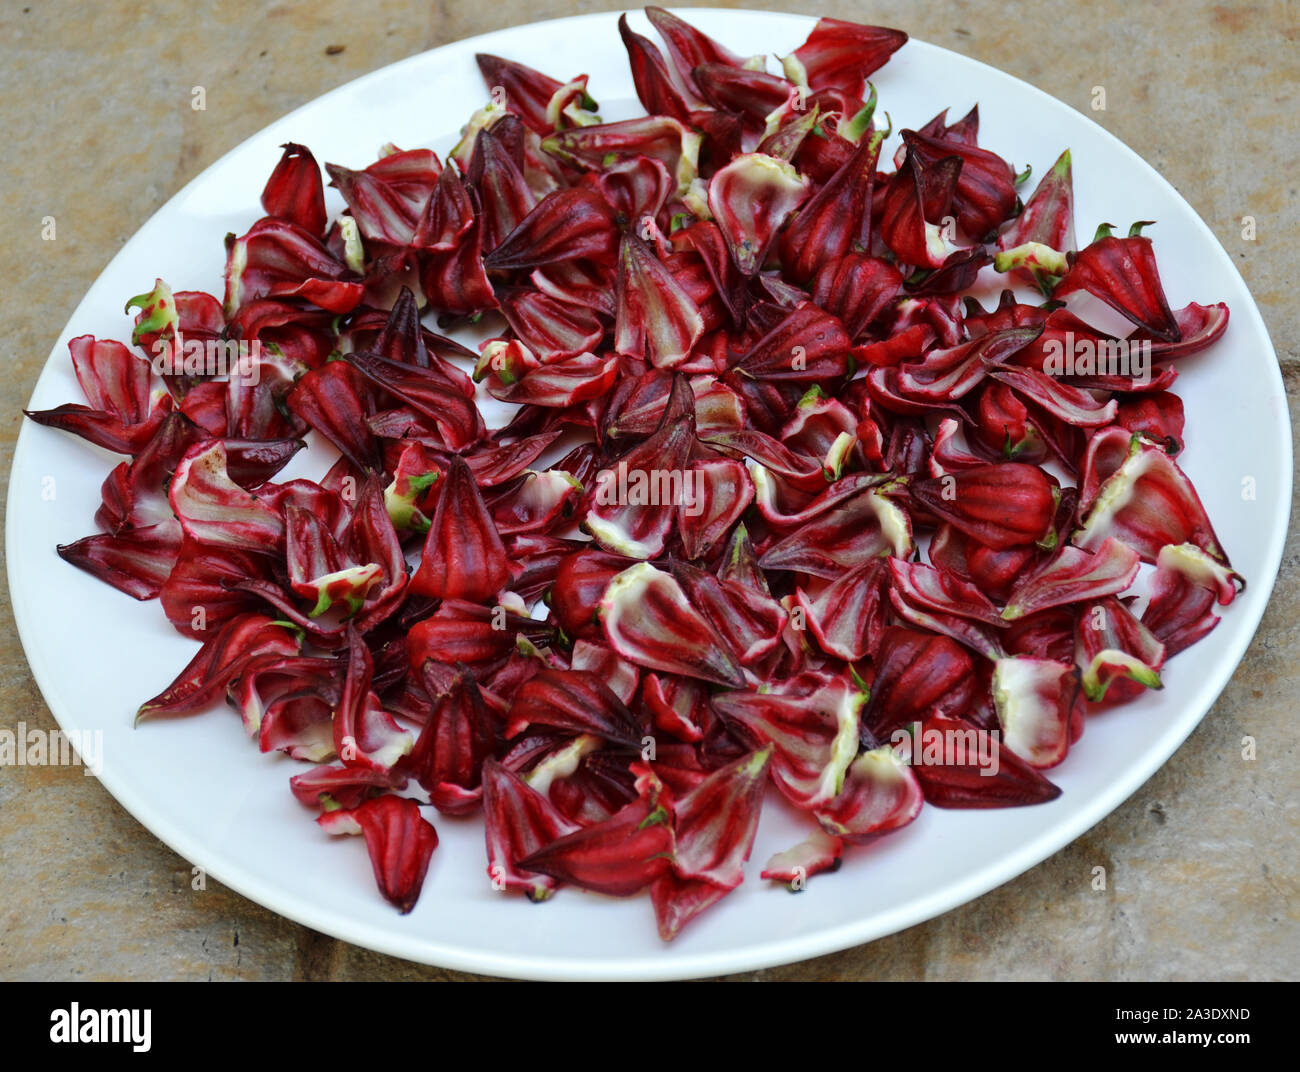 Hibiscus,Red Roselle, noto anche come "Giamaica'. Il colore rosso intenso di limone carnose o sapore di mirtillo palustre i calici possono essere pelati per bevande come tè o mangiato. Foto Stock